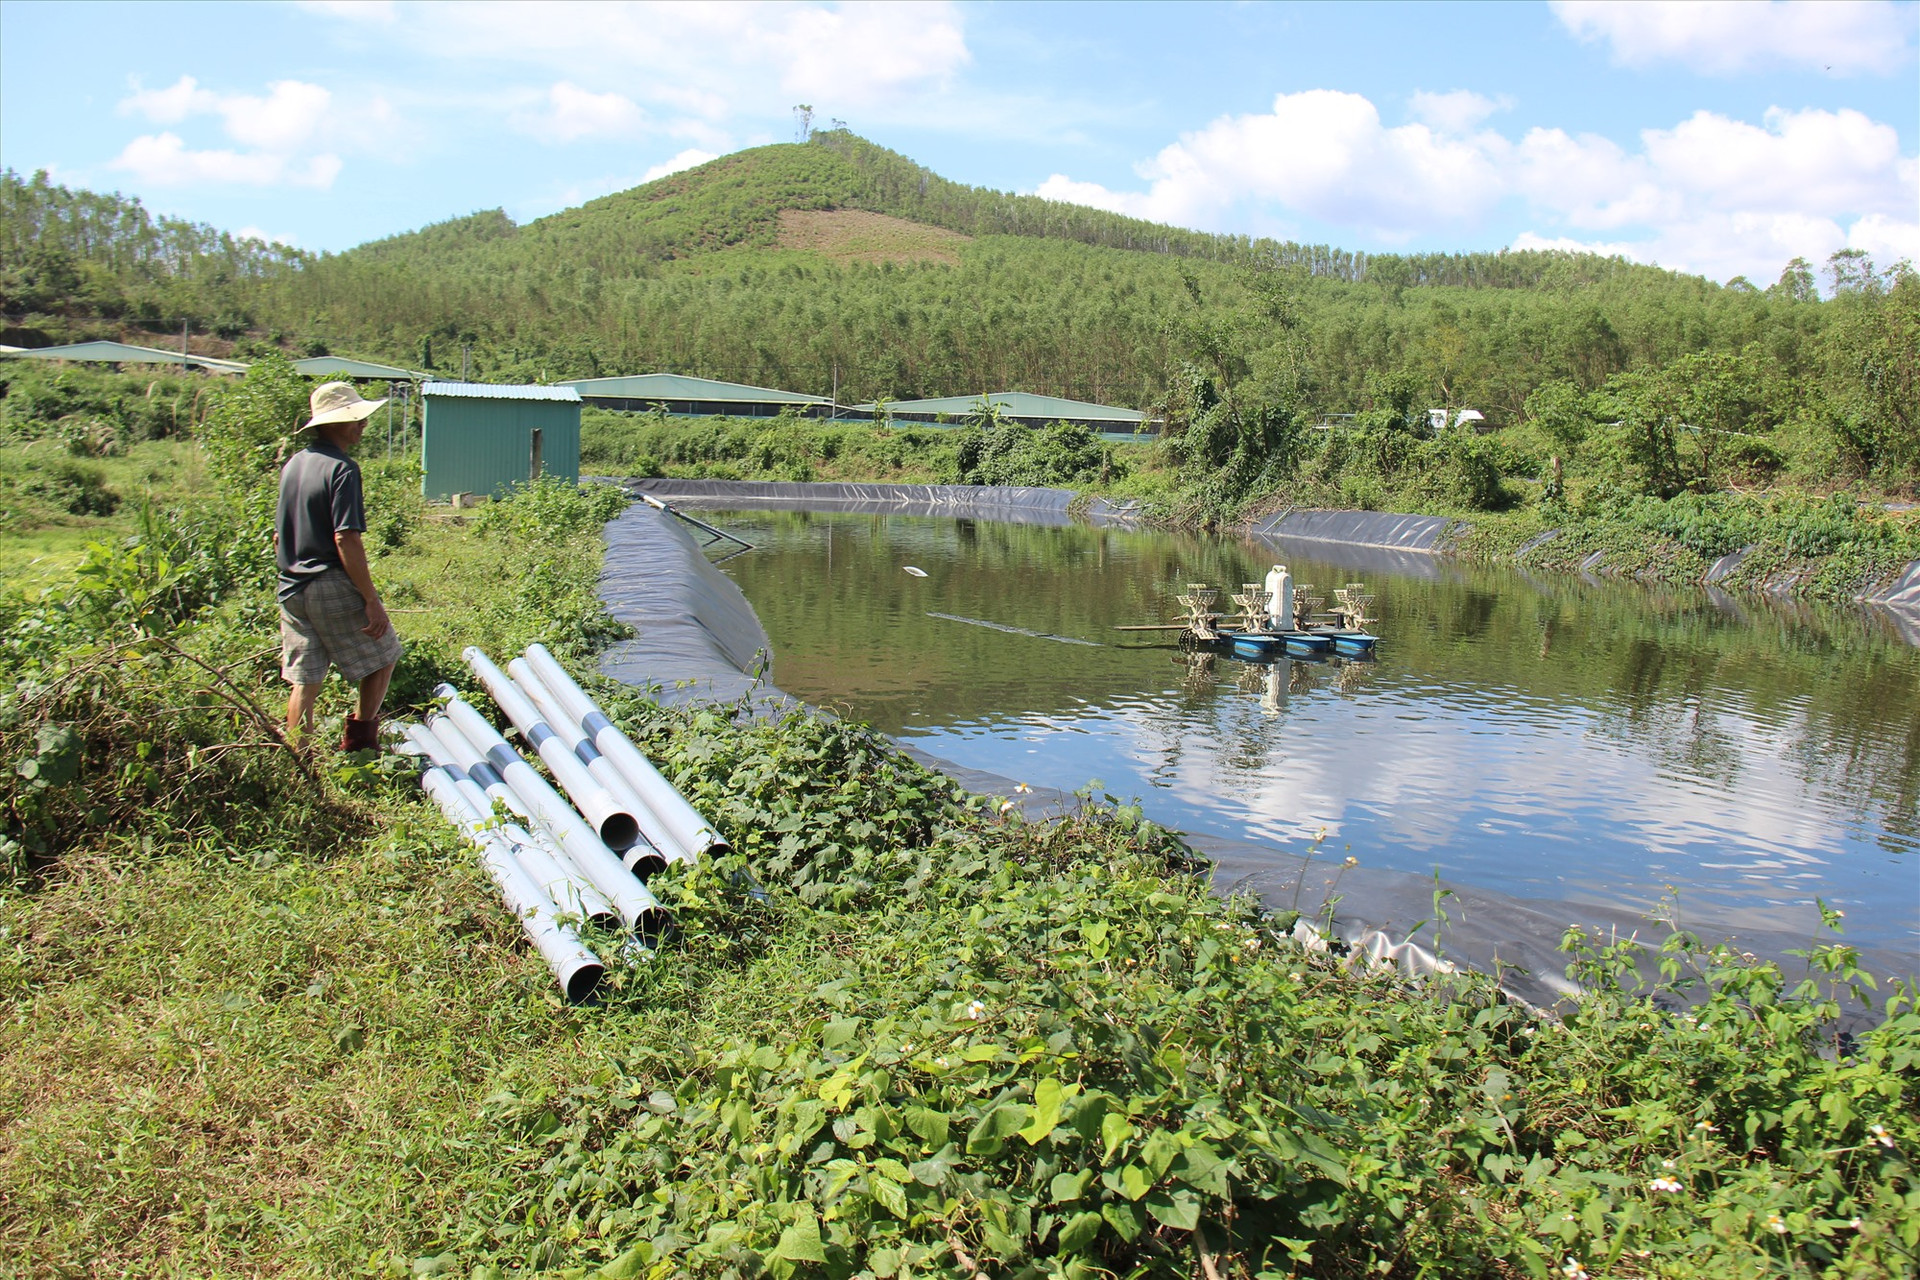 Khu vực hồ chứa nước thải của trại chăn nuôi heo ở thôn Trung Sơn, xã Tam Mỹ Tây. Ảnh: HOÀI AN